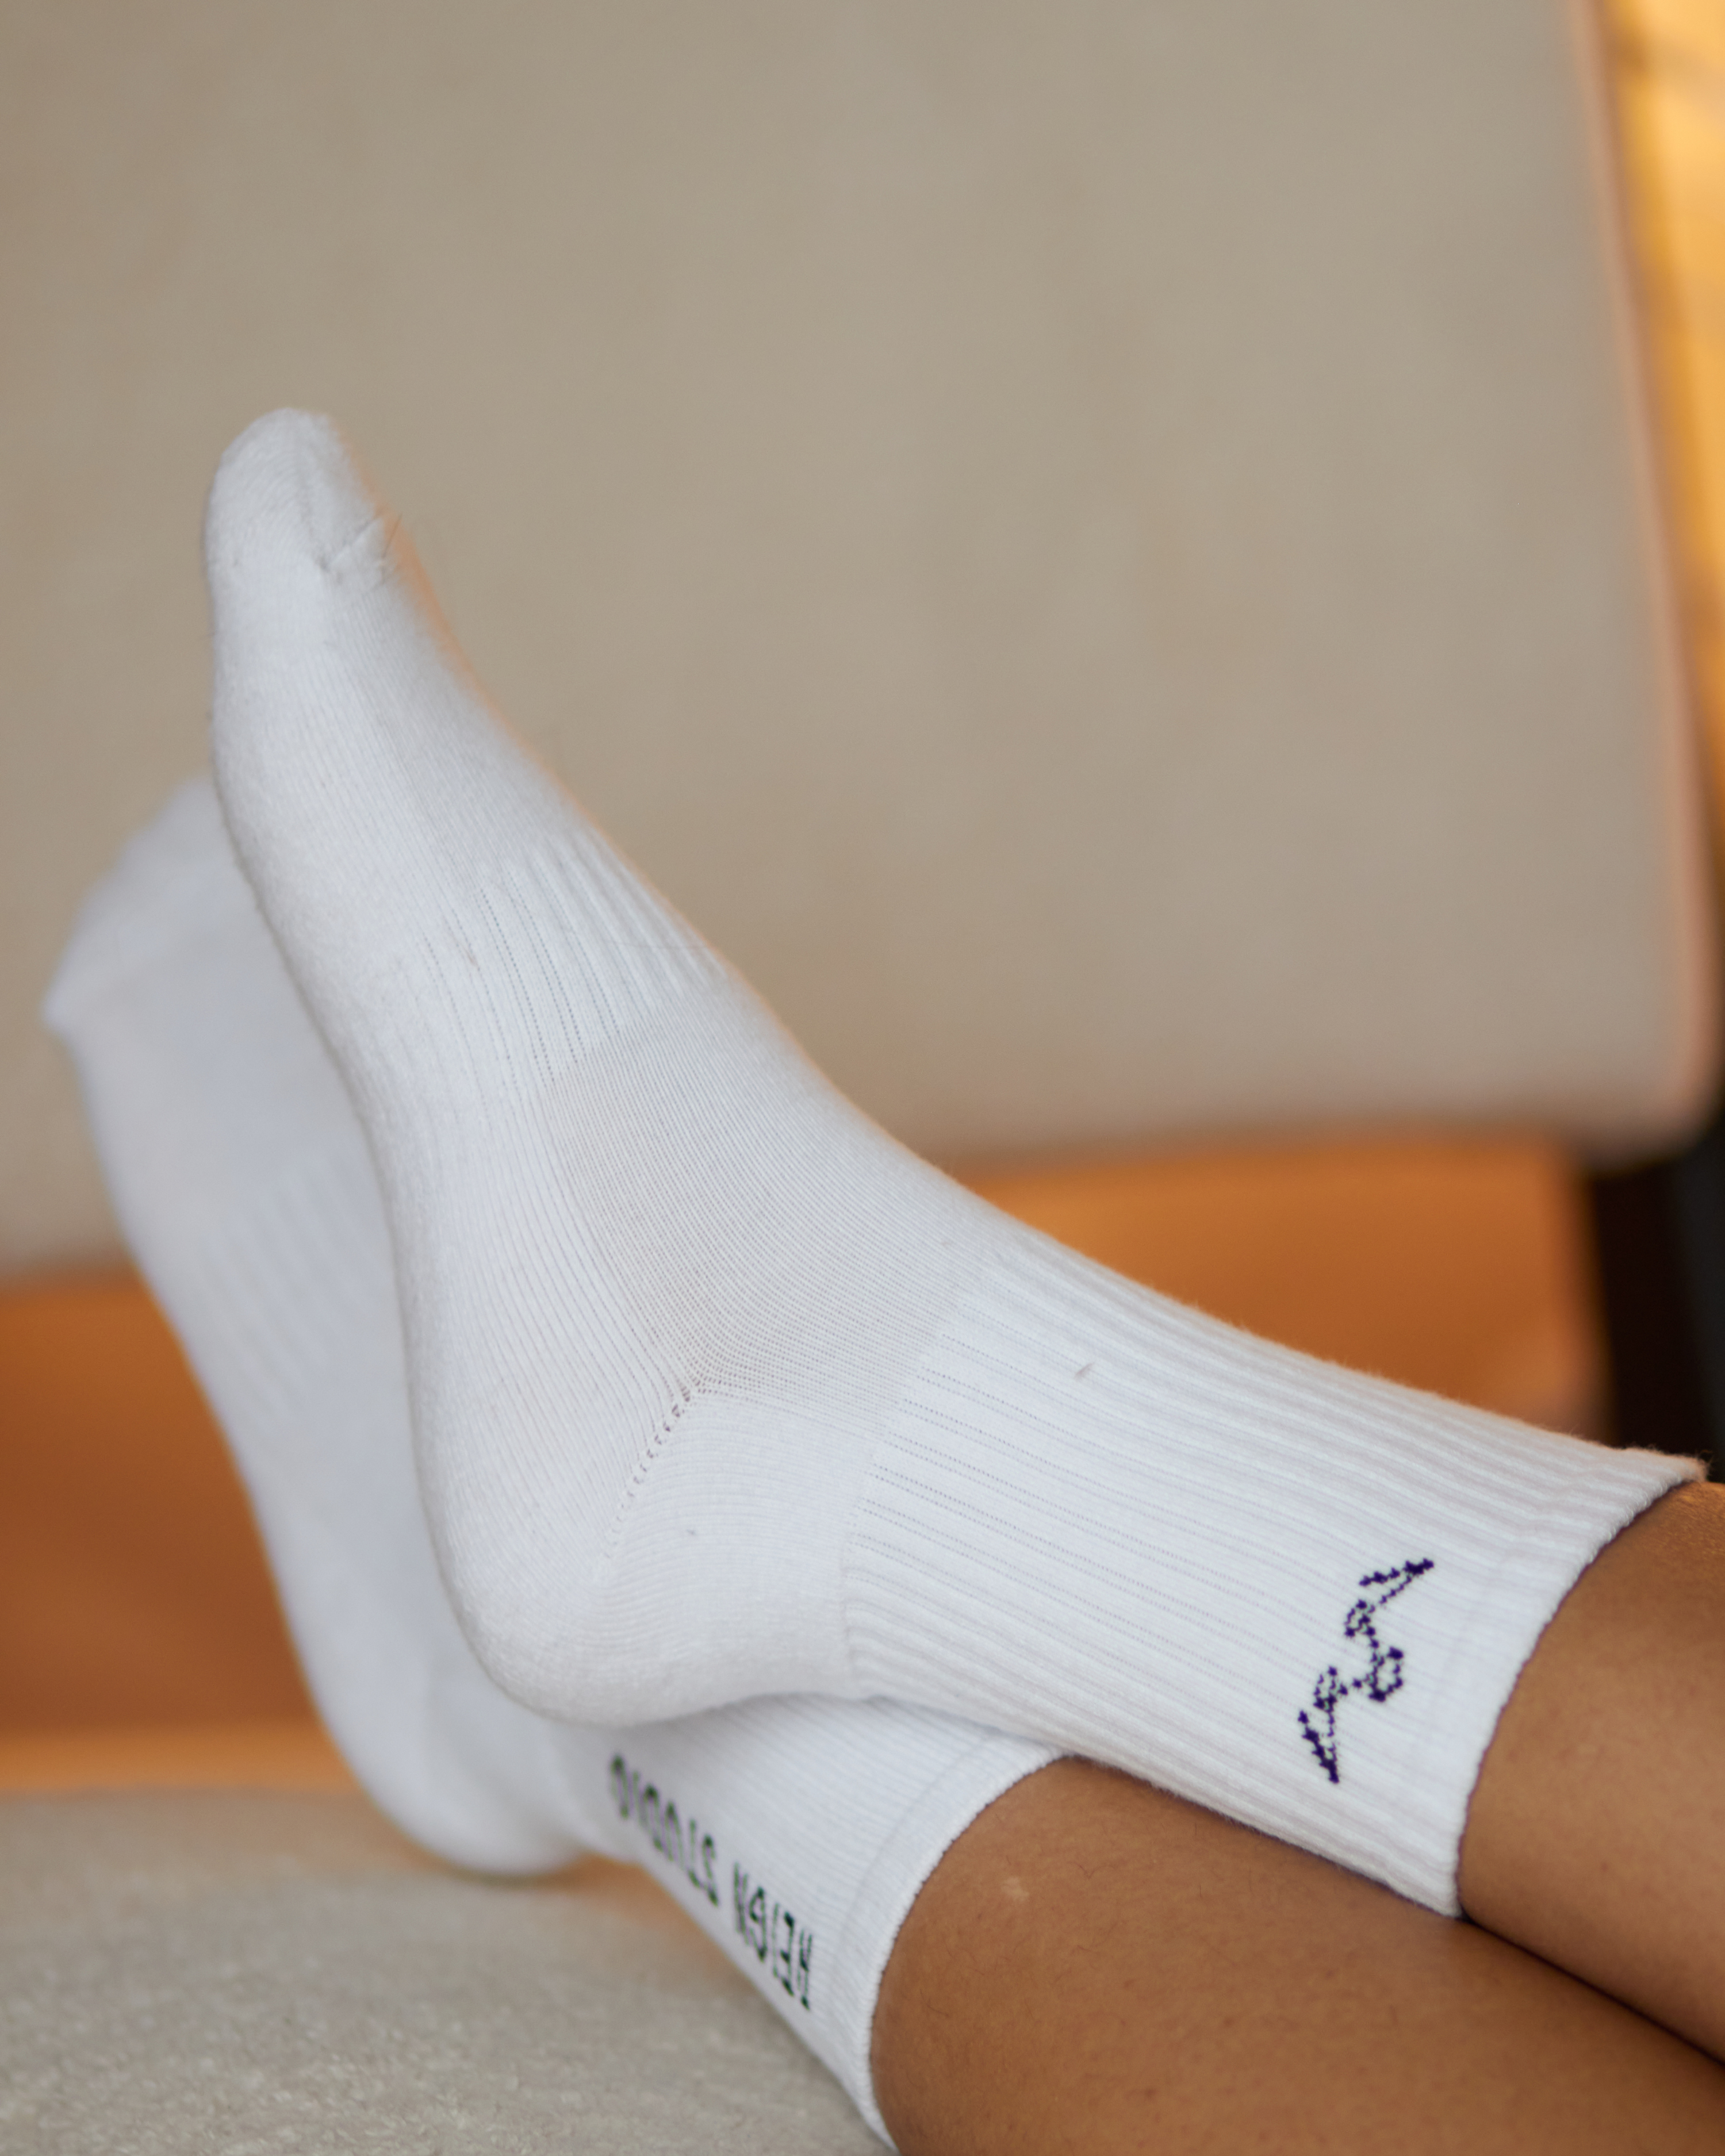 Reign Studio Branded Socks